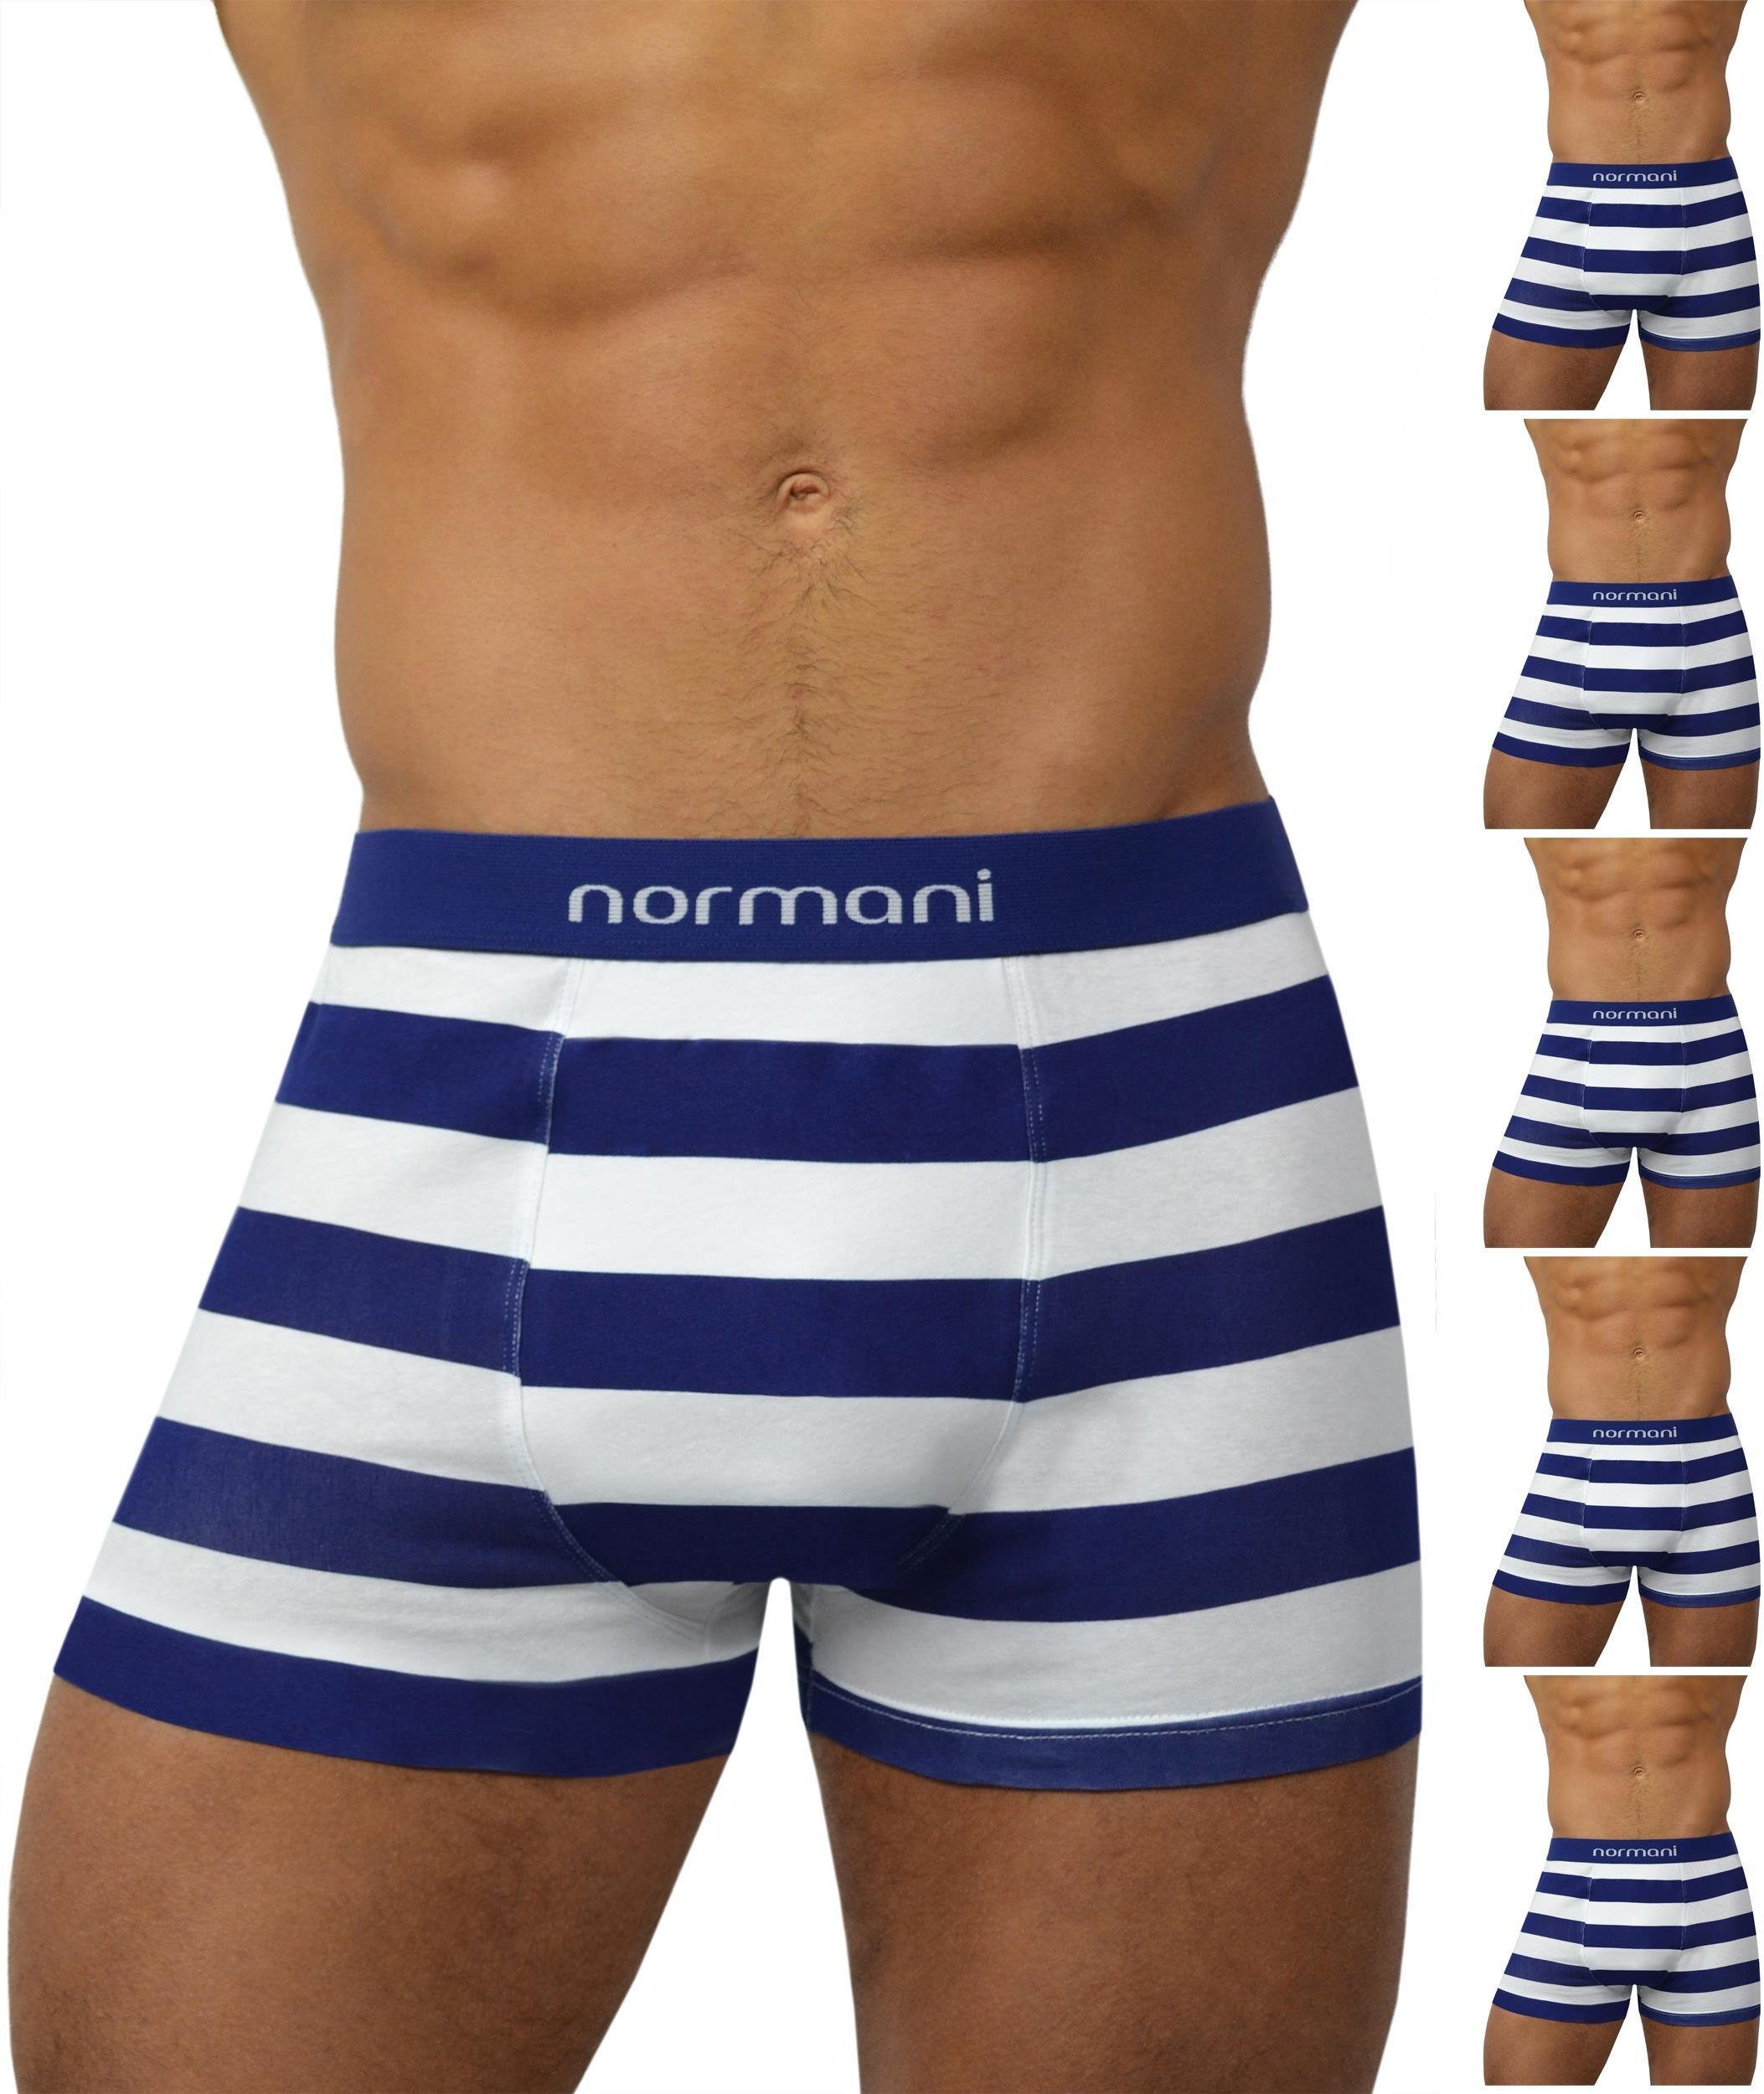 normani Retro Boxer 6 Stück Retro Boxershorts aus Baumwolle Unterhose aus atmungsaktiver Baumwolle Navy Stripes